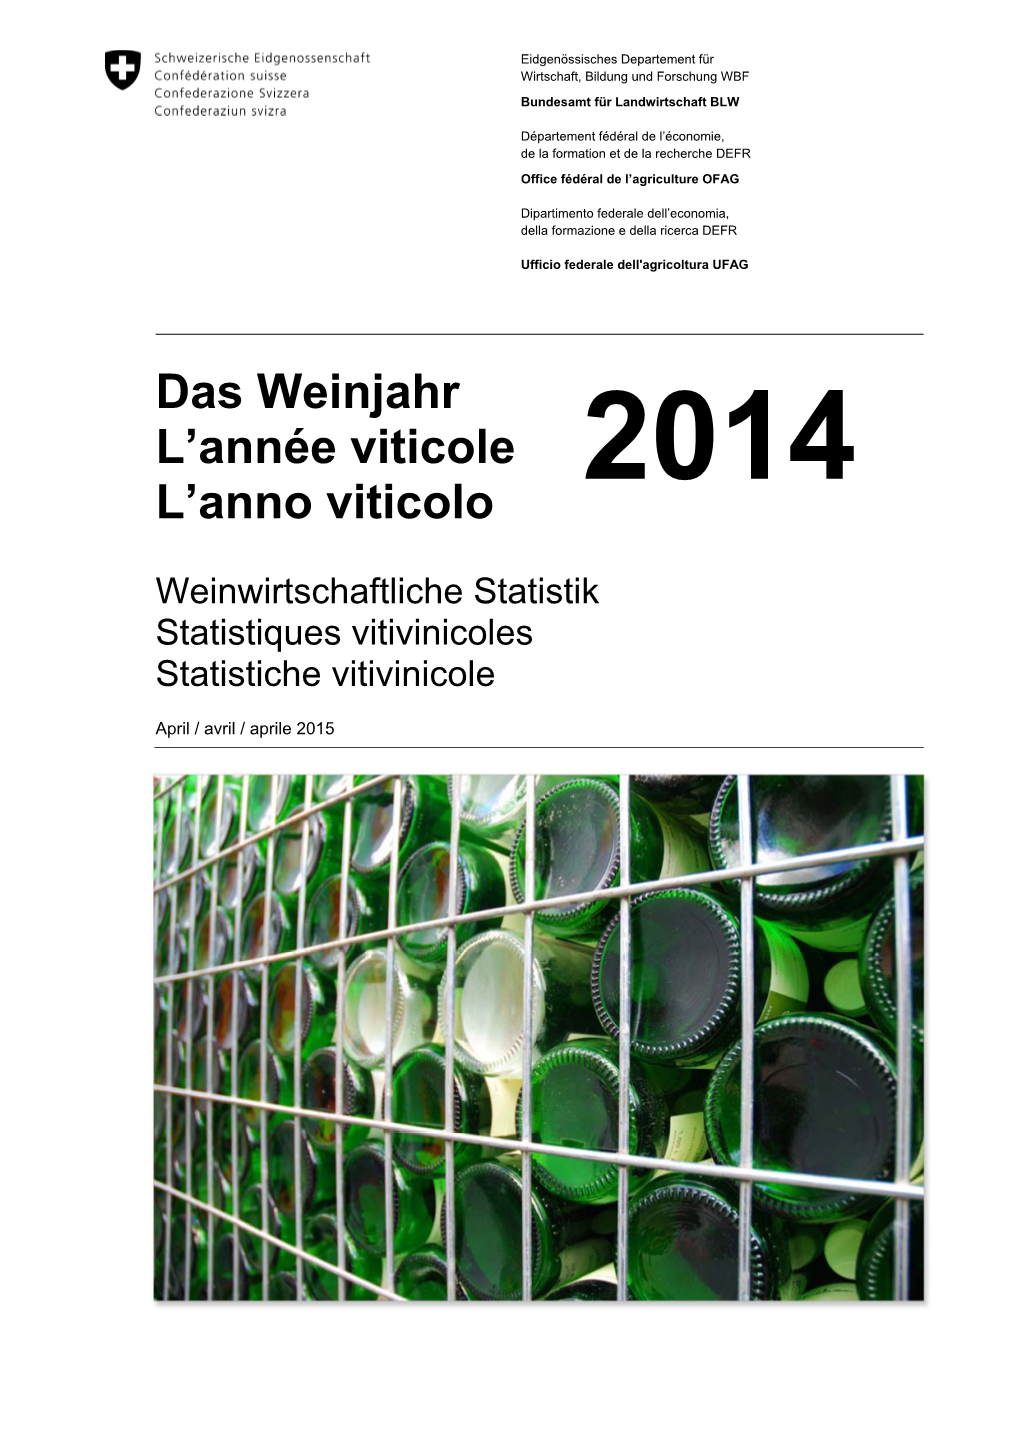 Das Weinjahr L’Année Viticole L’Anno Viticolo 2014